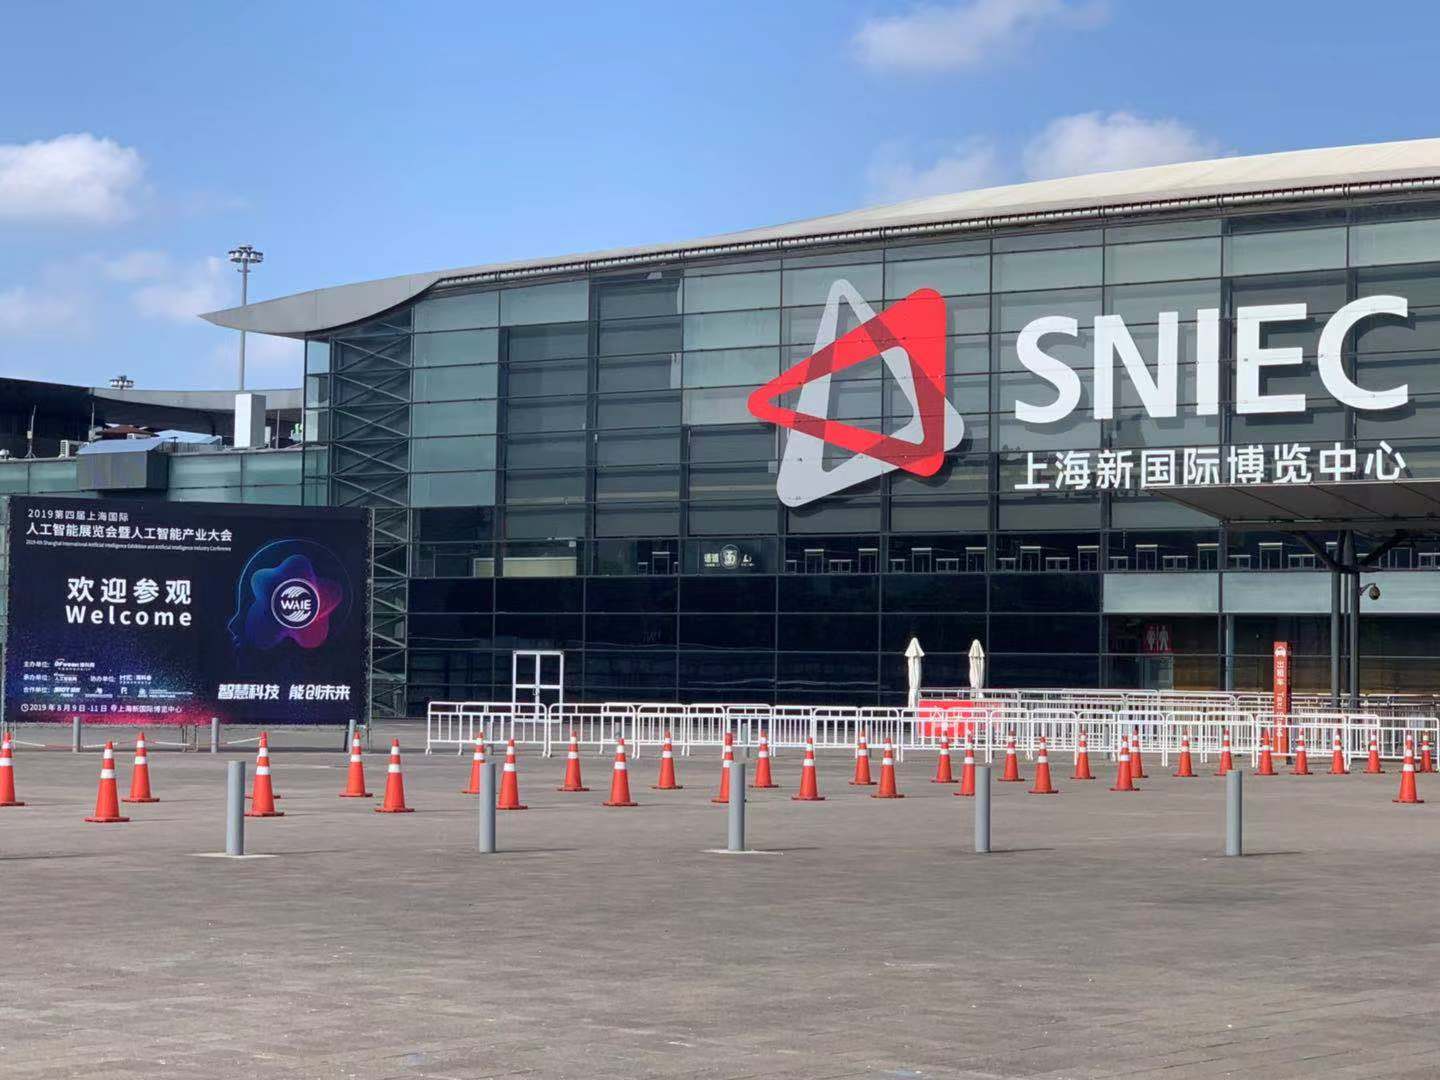 这周五的上海很热！原来将有3万多名观众齐聚AI视觉盛宴“WAIE 2019” 3天倒计时